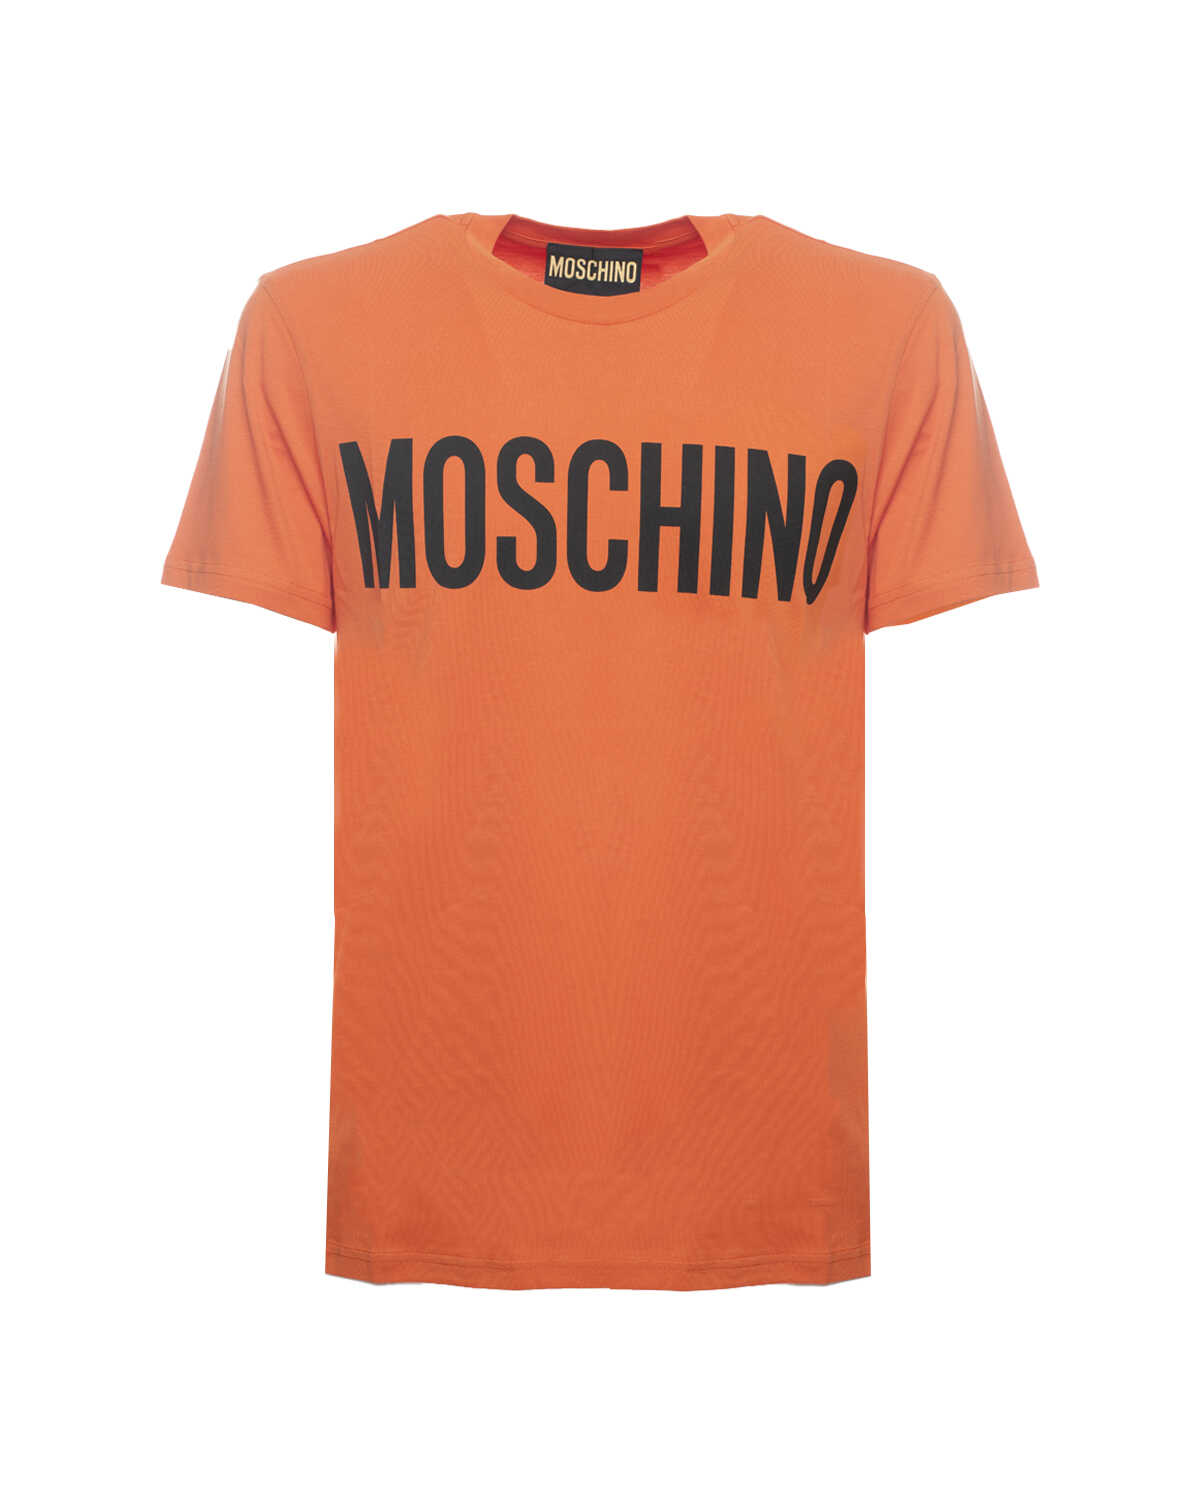 Moschino Classic Tshirt ARANCIONE